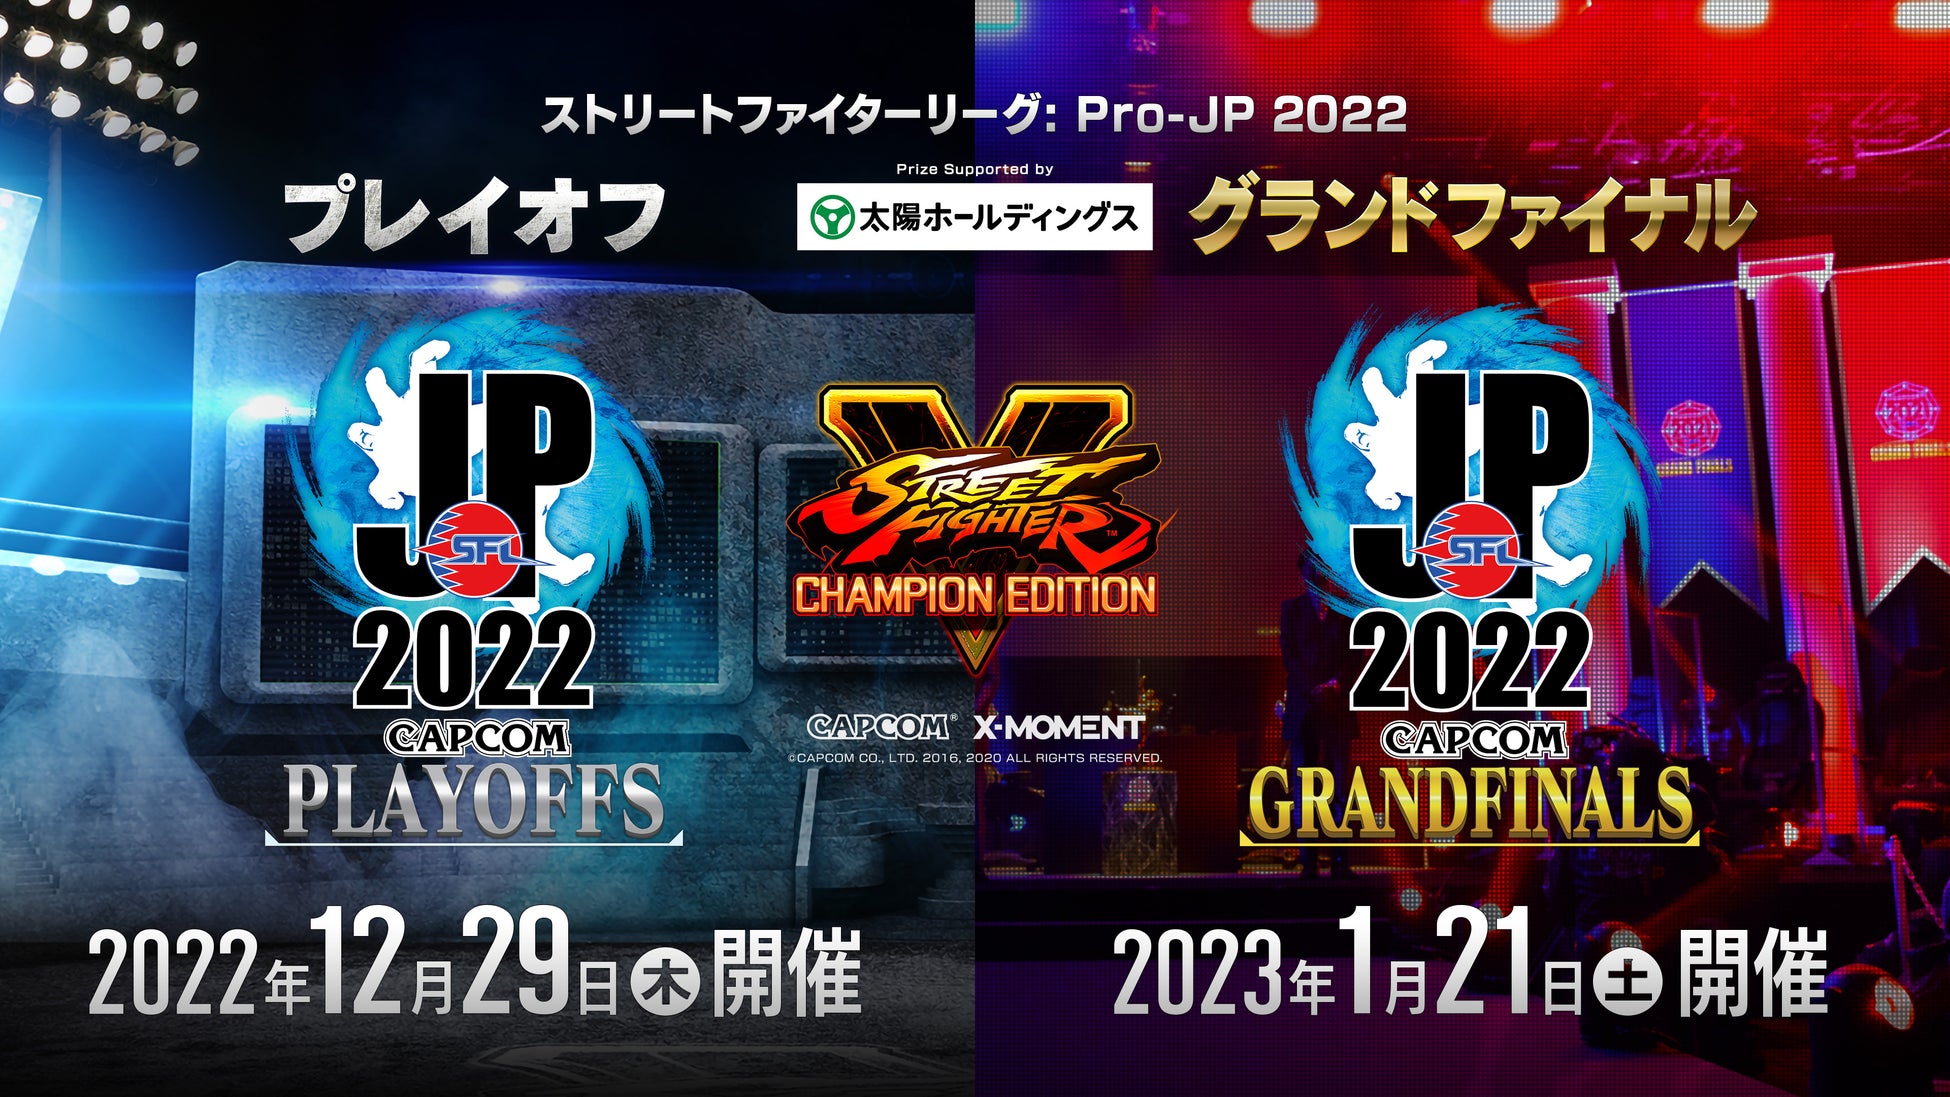 「ストリートファイターリーグ: Pro-JP 2022」プレイオフが12月29日(木)、グランドファイナルが1月21日(土)に開催決定！　WEB先行視聴チケットも販売開始！　